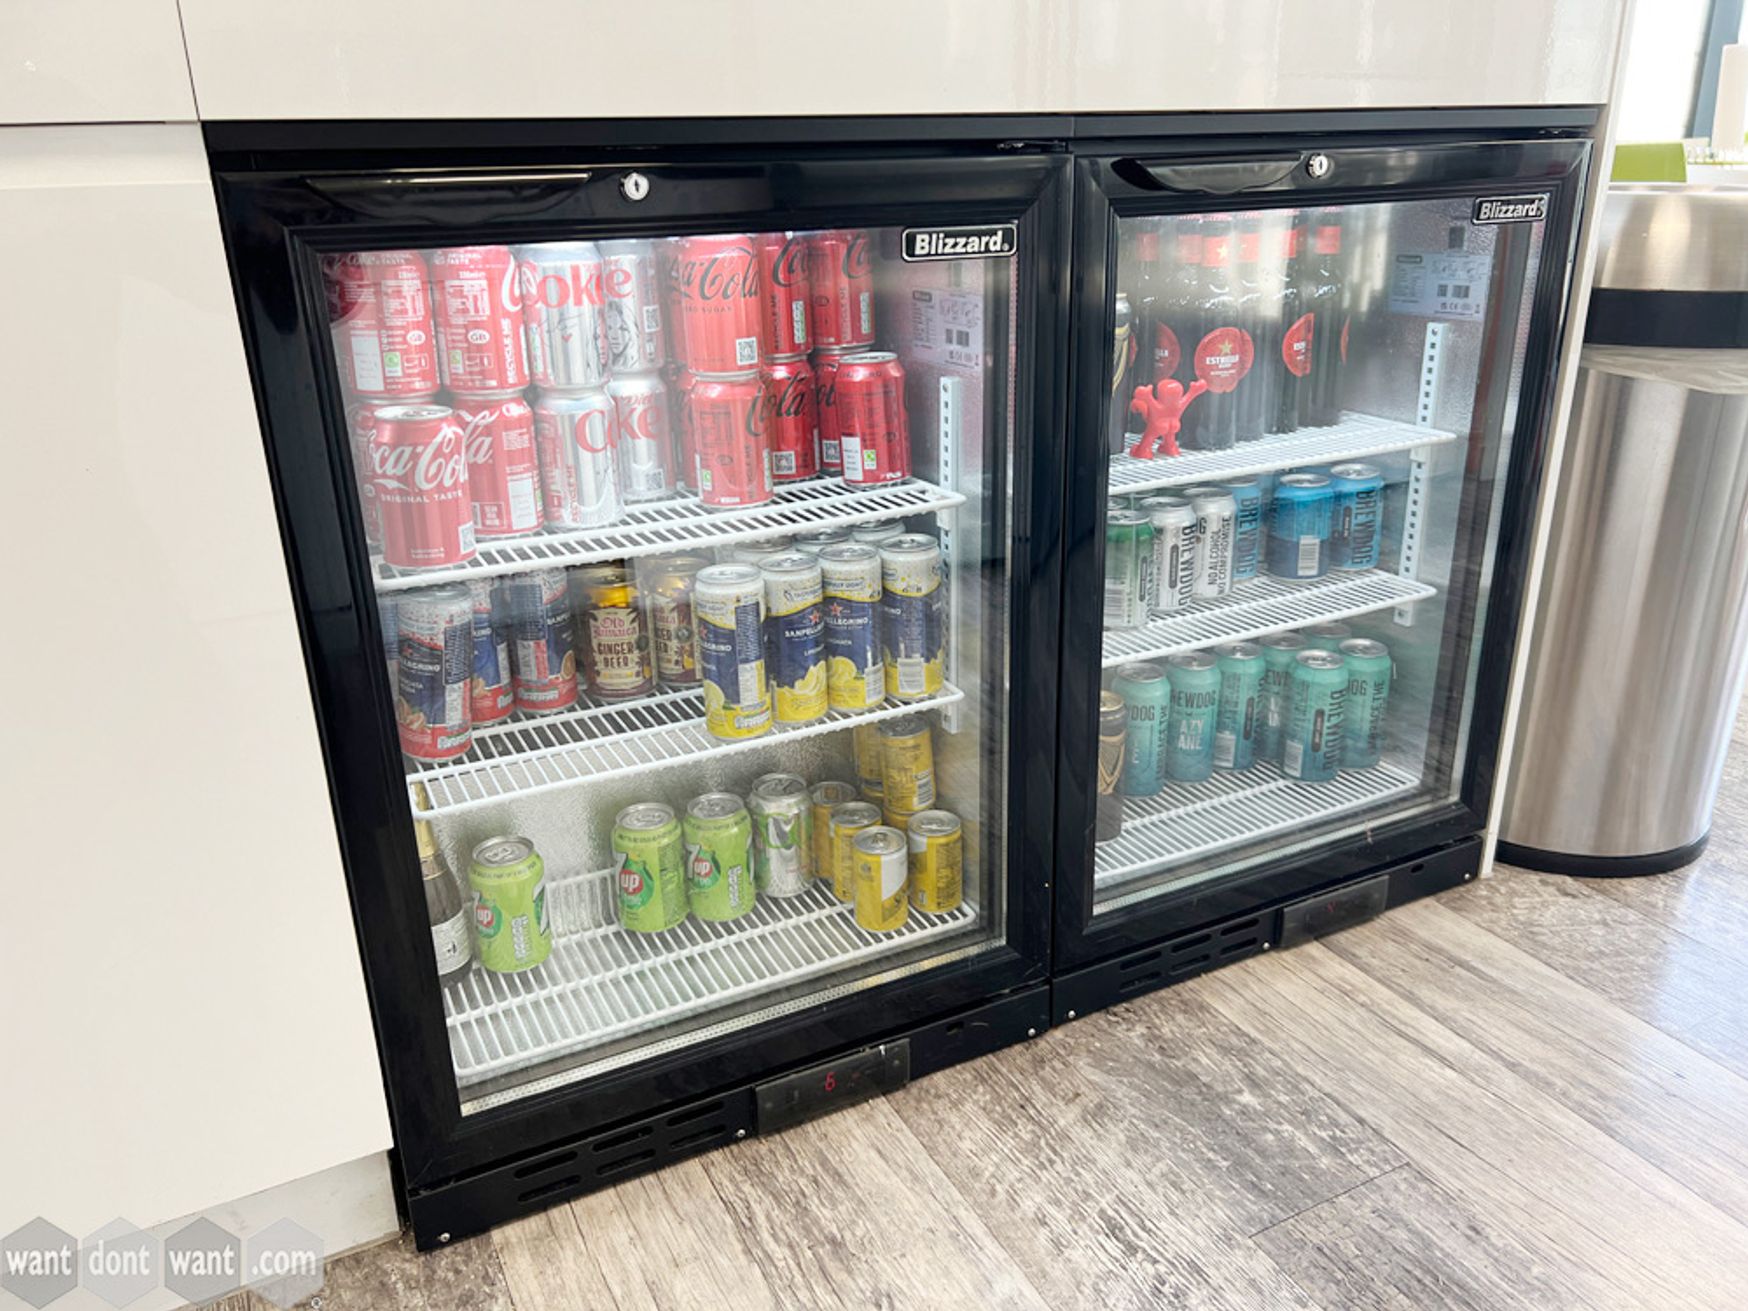 Used 'Blizzard Bar' drinks fridge